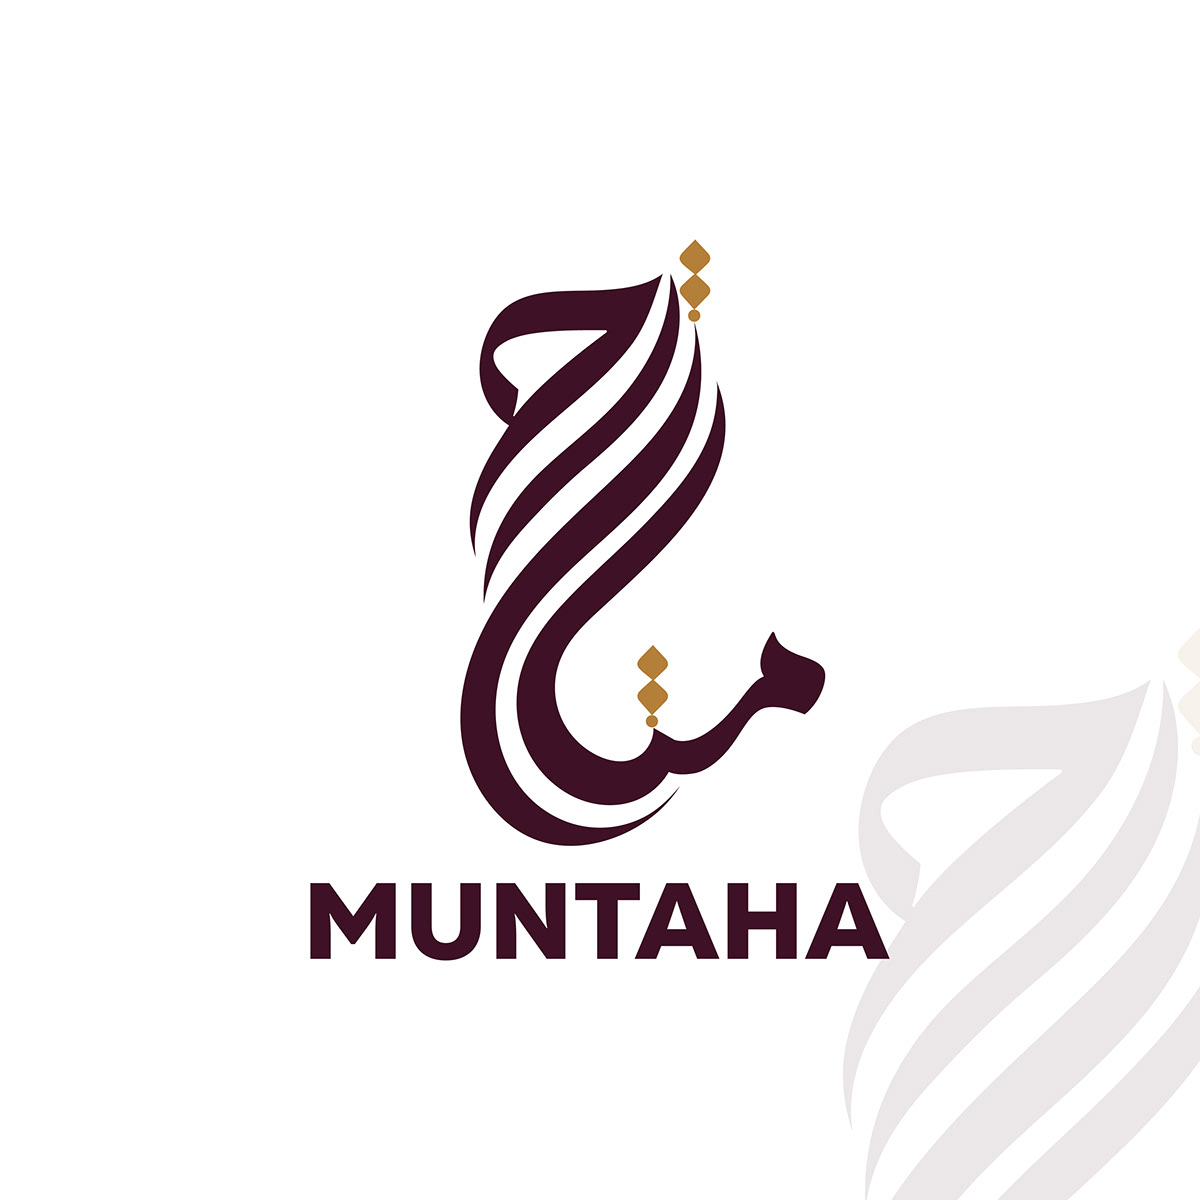 muntaha name in arabic calligraphy design, arabic name calligraphy.